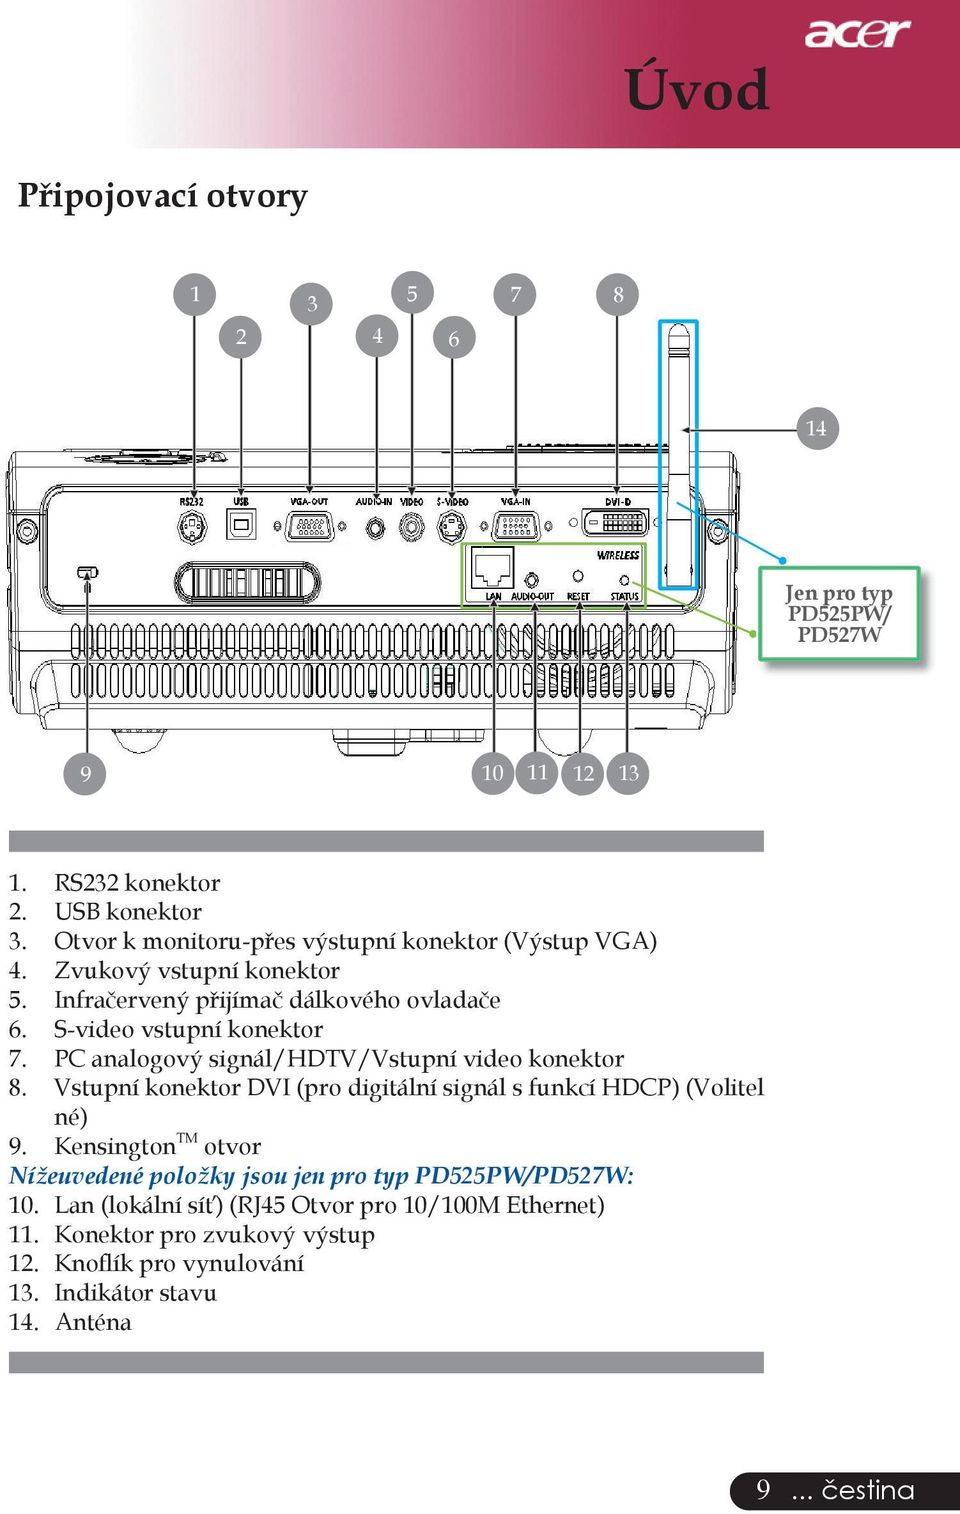 PC analogový signál/hdtv/vstupní video konektor 8. Vstupní konektor DVI (pro digitální signál s funkcí HDCP) (Volitel né) 9.